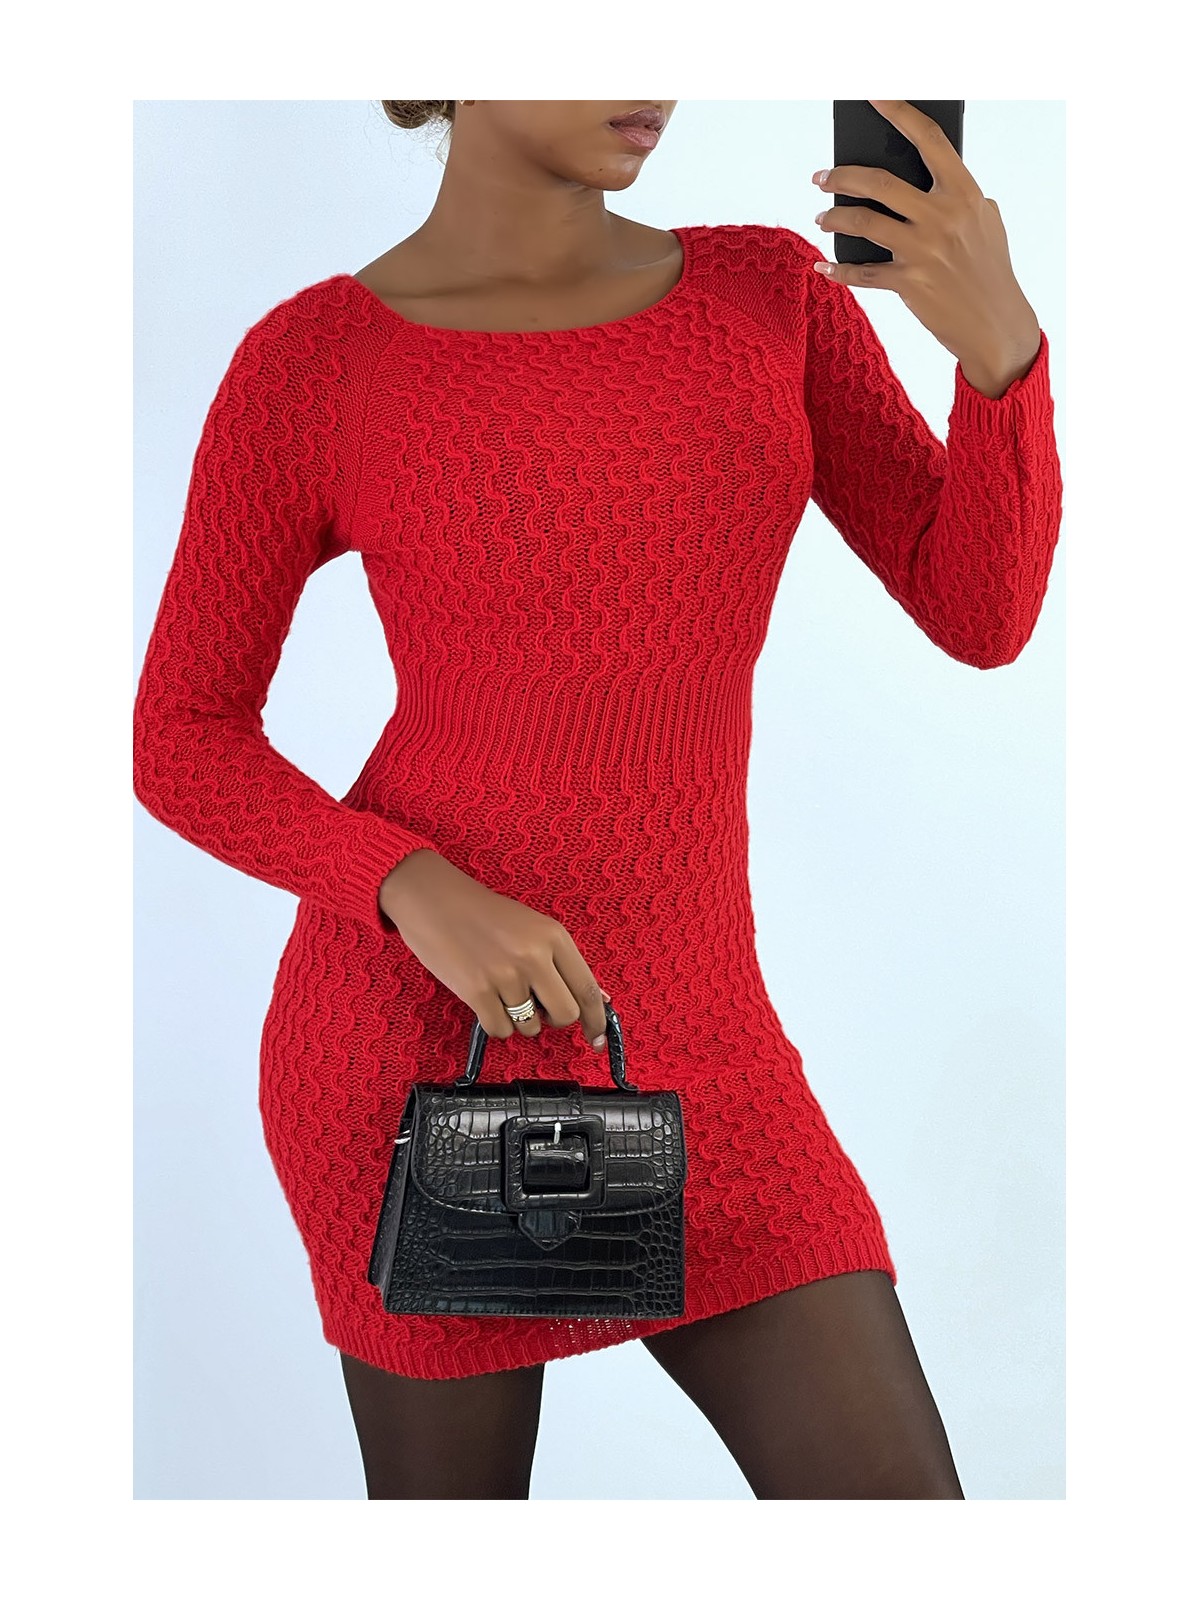 Magnifique robe pull rouge joliment tressé cintré à la taille - 2